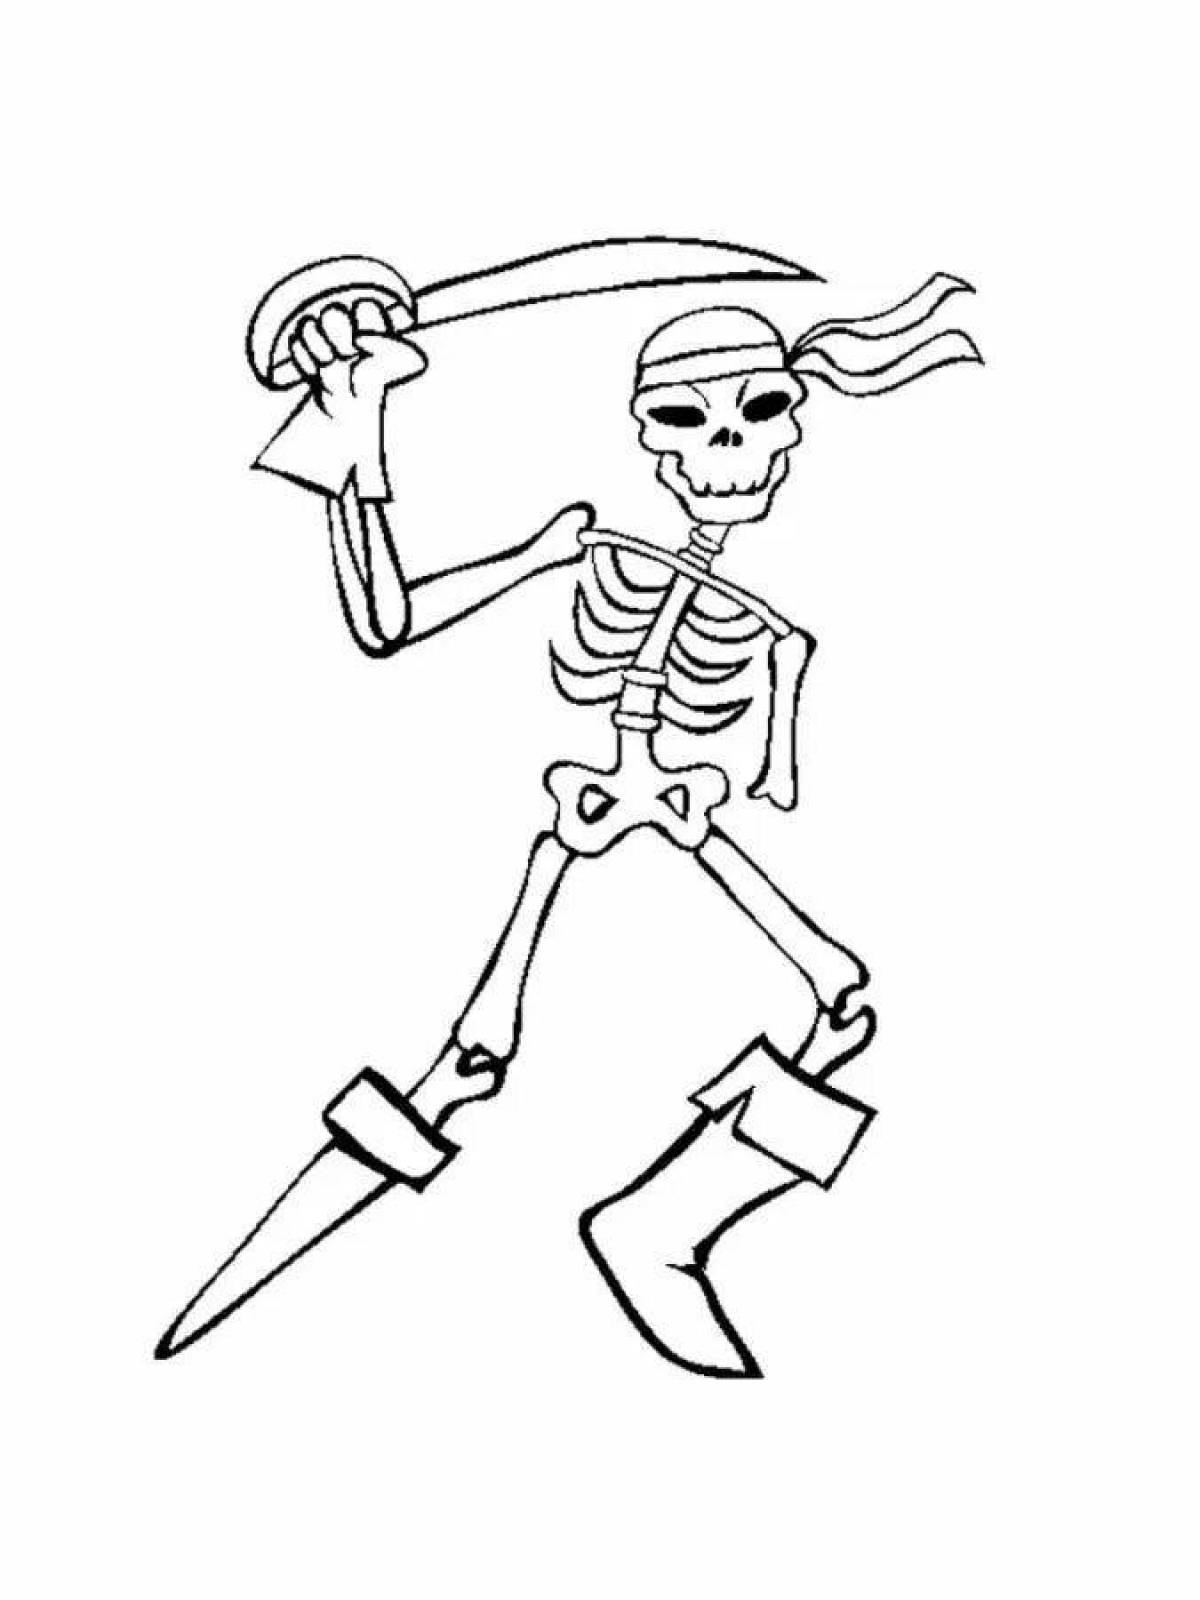 Human skeleton coloring page